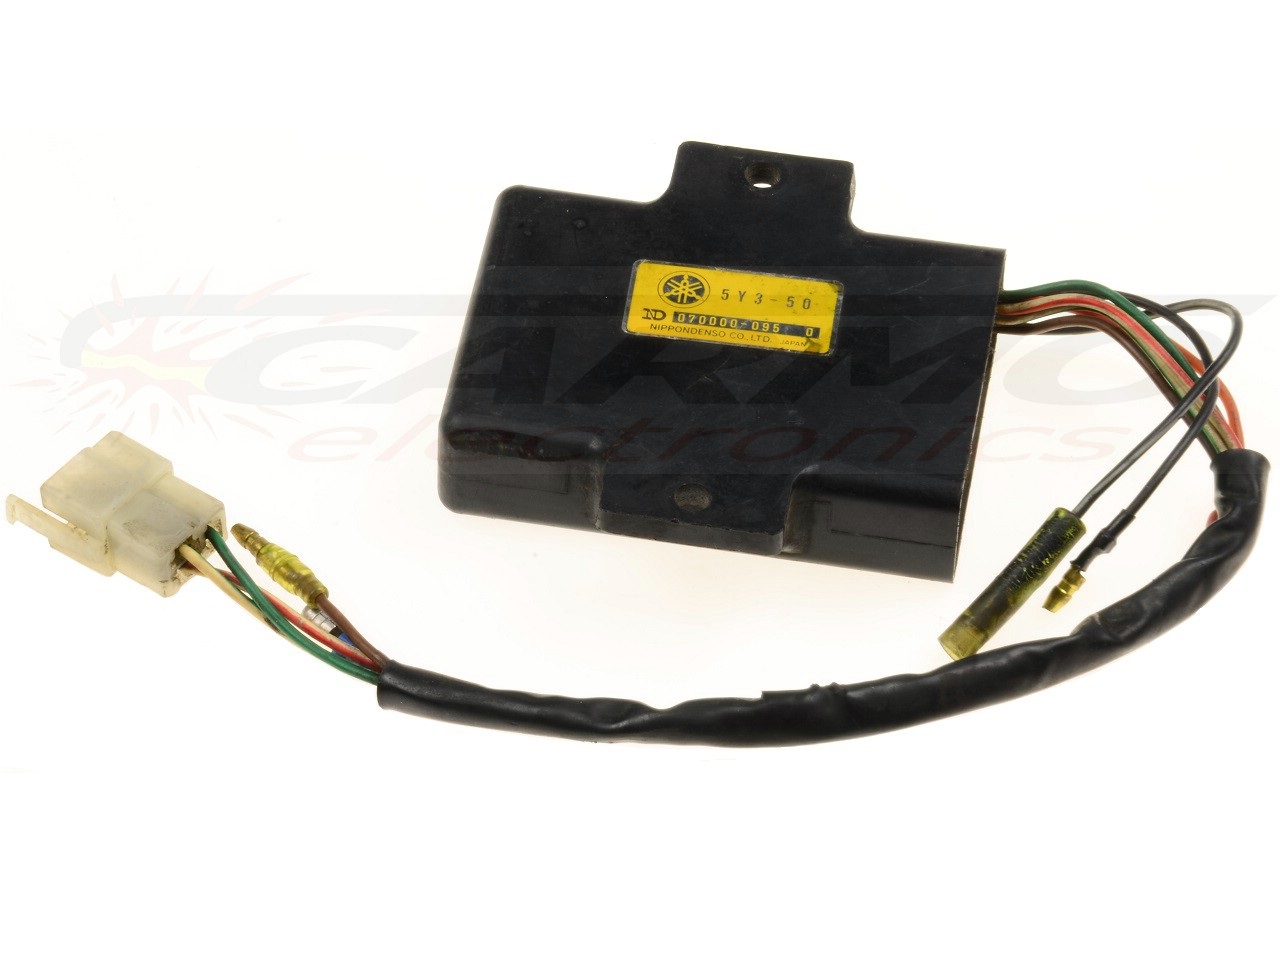 SRX650 CDI dispositif de commande boîte noire (5Y3-50)